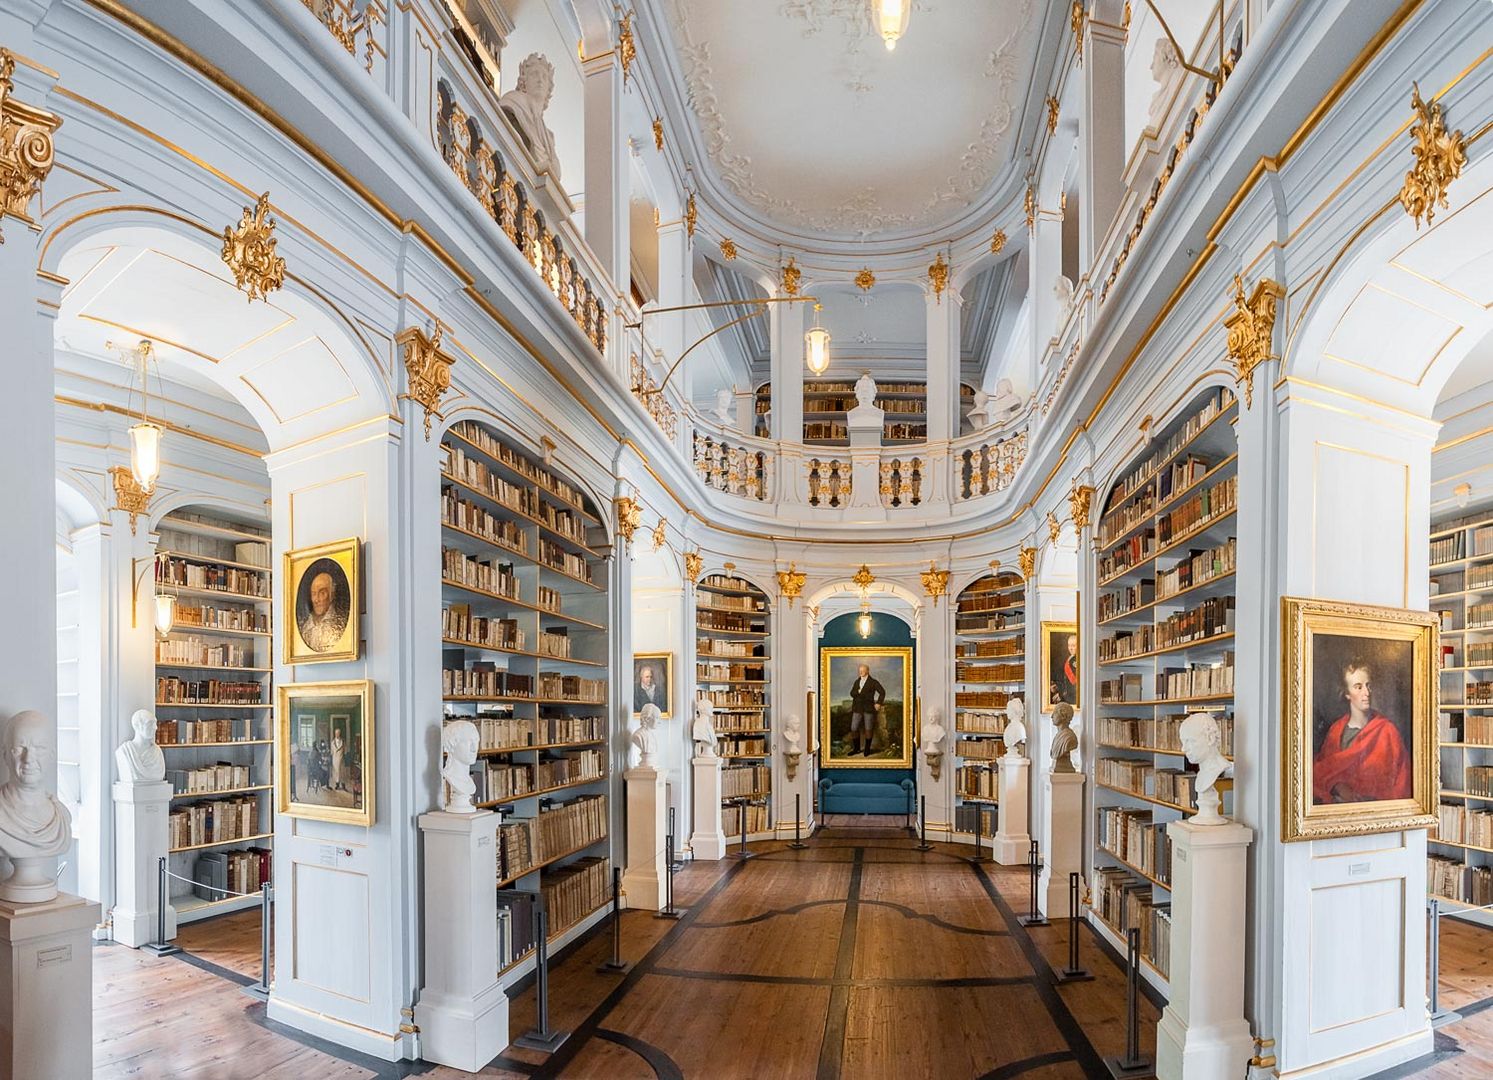 Rokokosaal - Anna Amalia Bibliothek